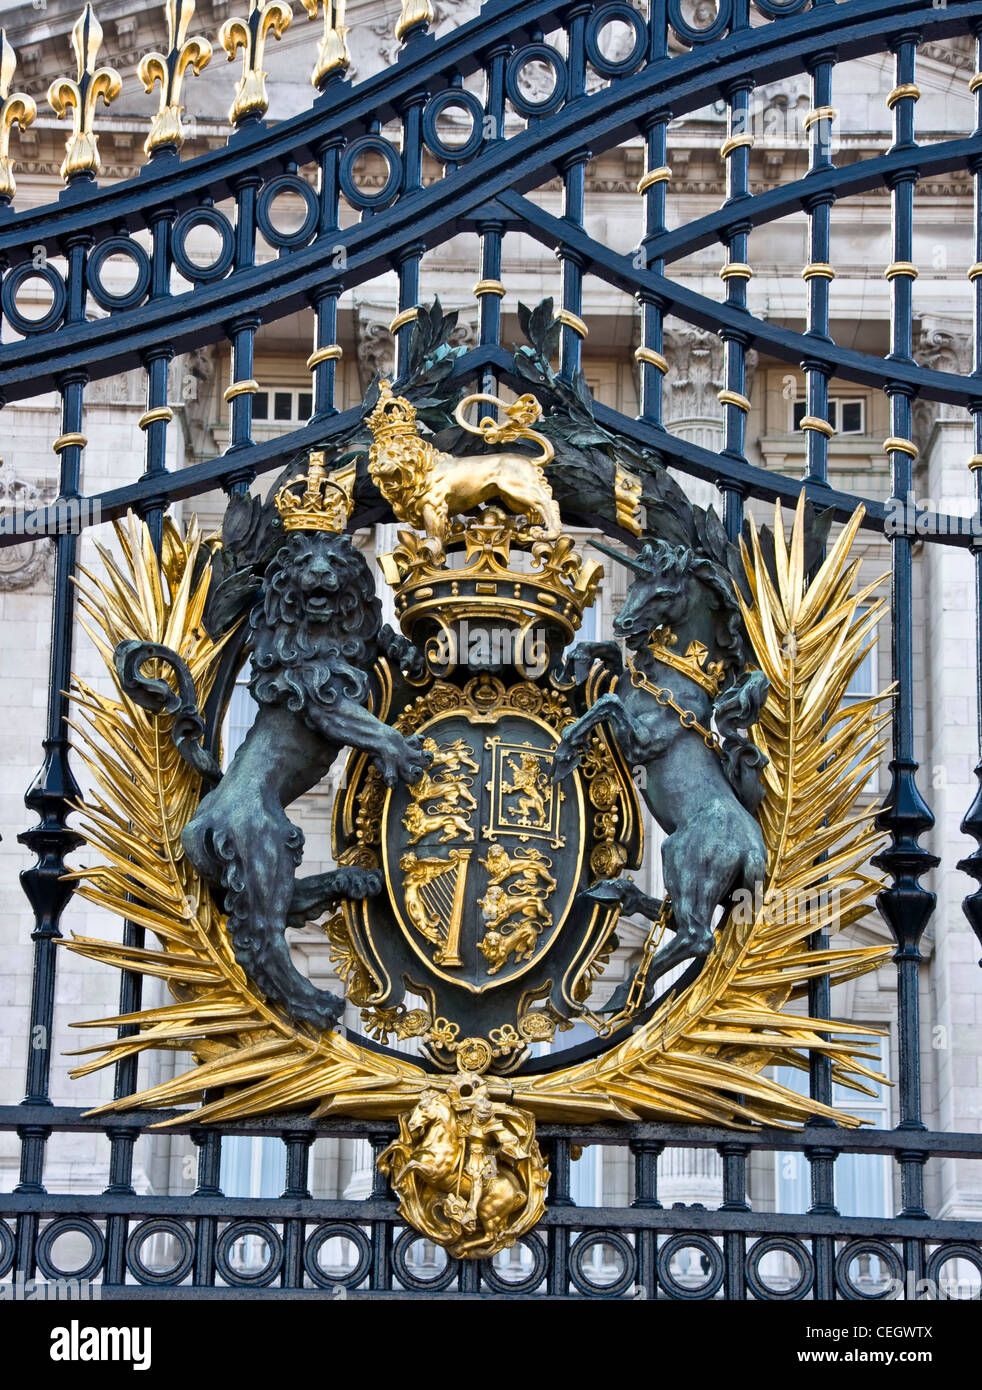 Royal crest on the gates of Buckingham Palace London England Europe Stock Photo